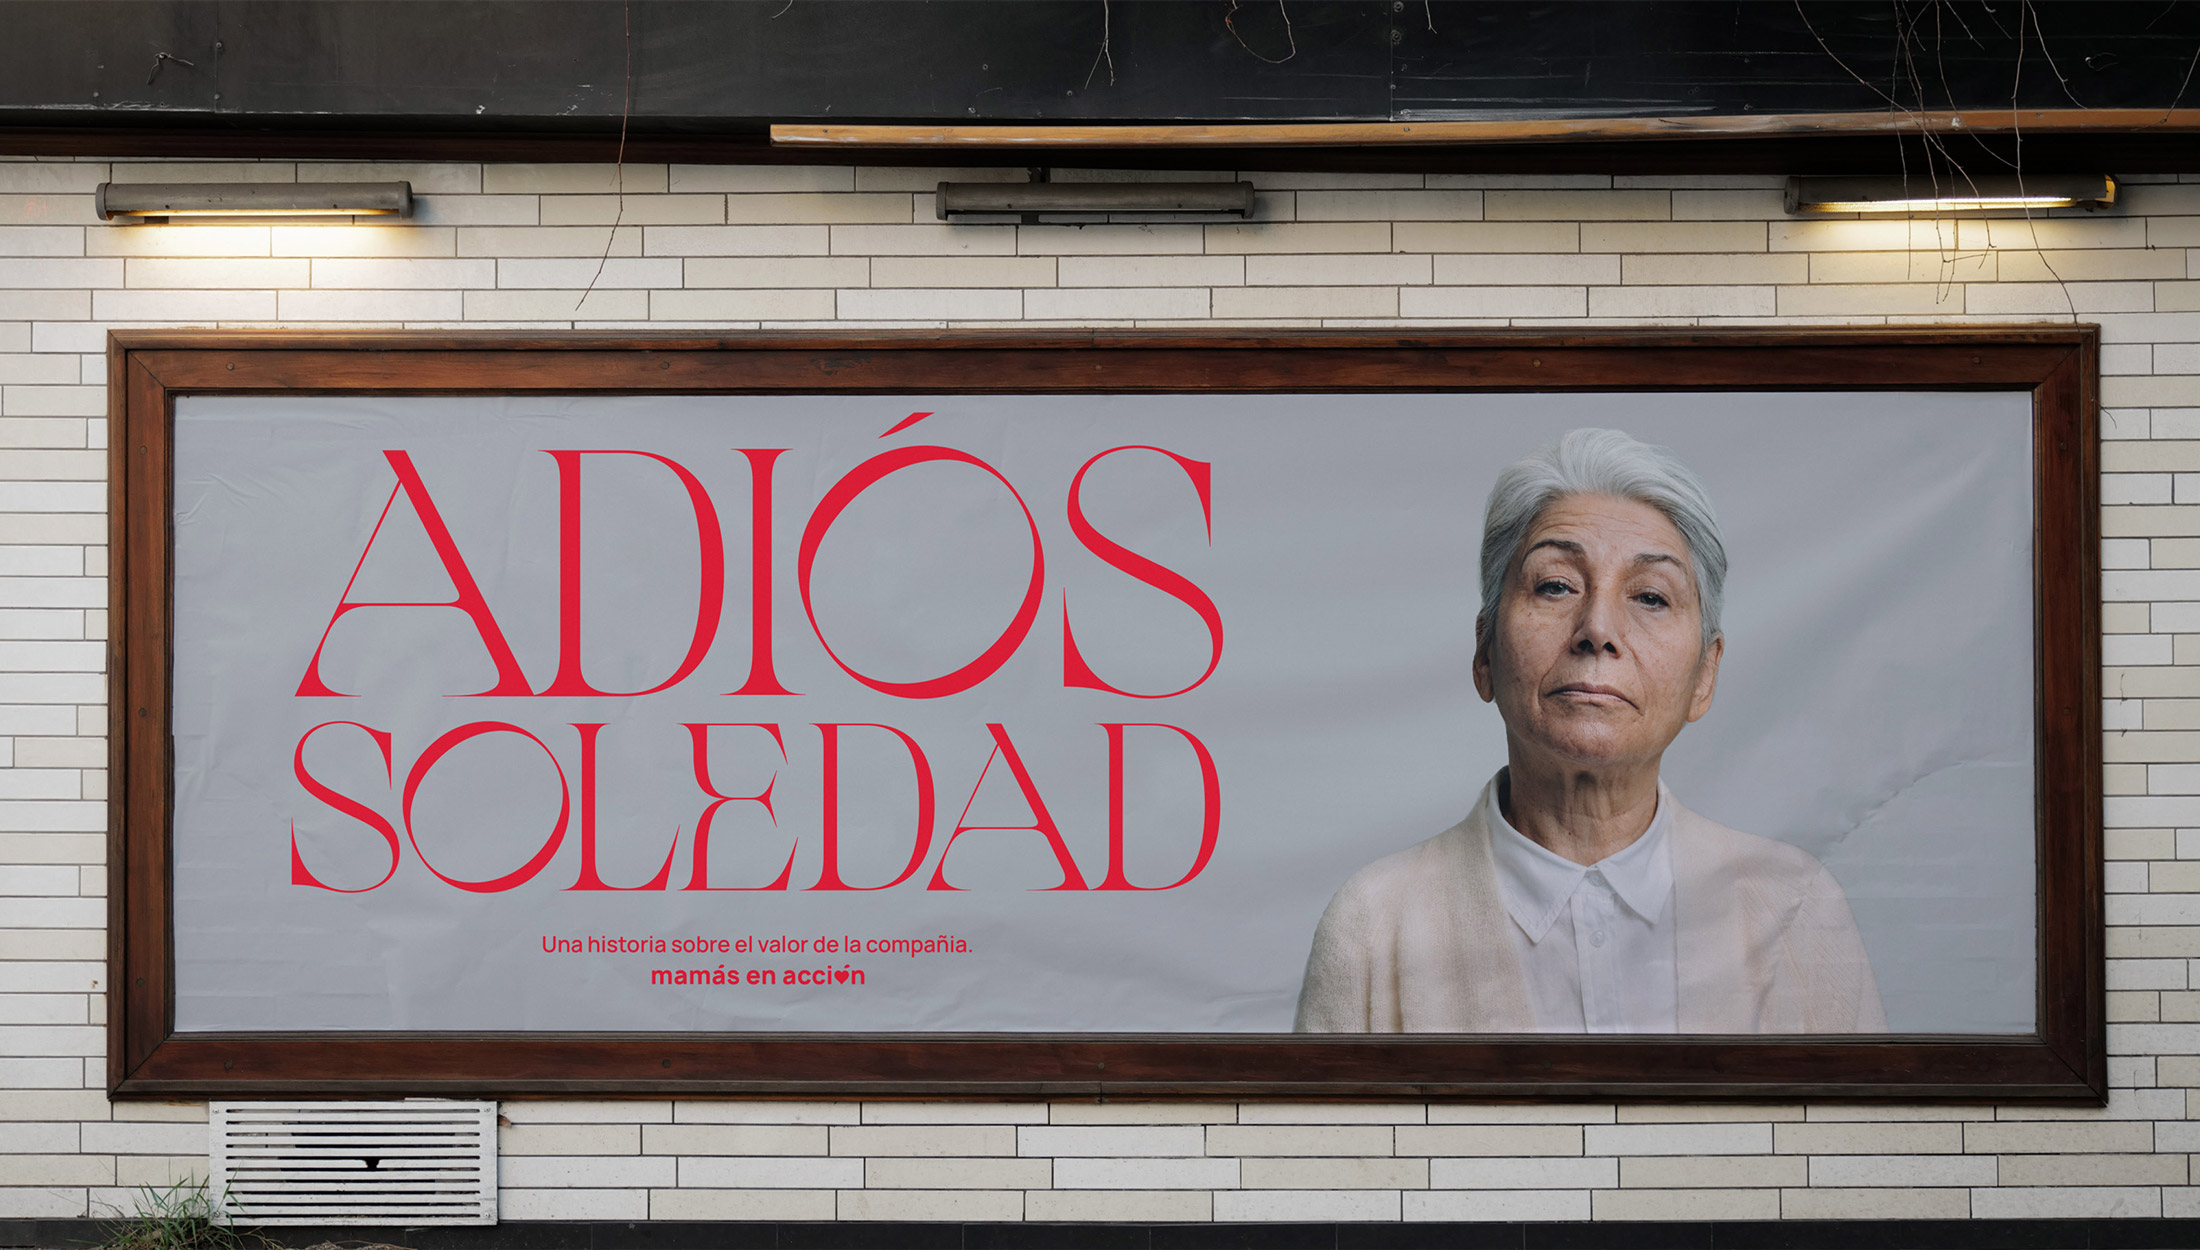 Cartel en valla publicitaria anunciando el vídeo Adiós Soledad